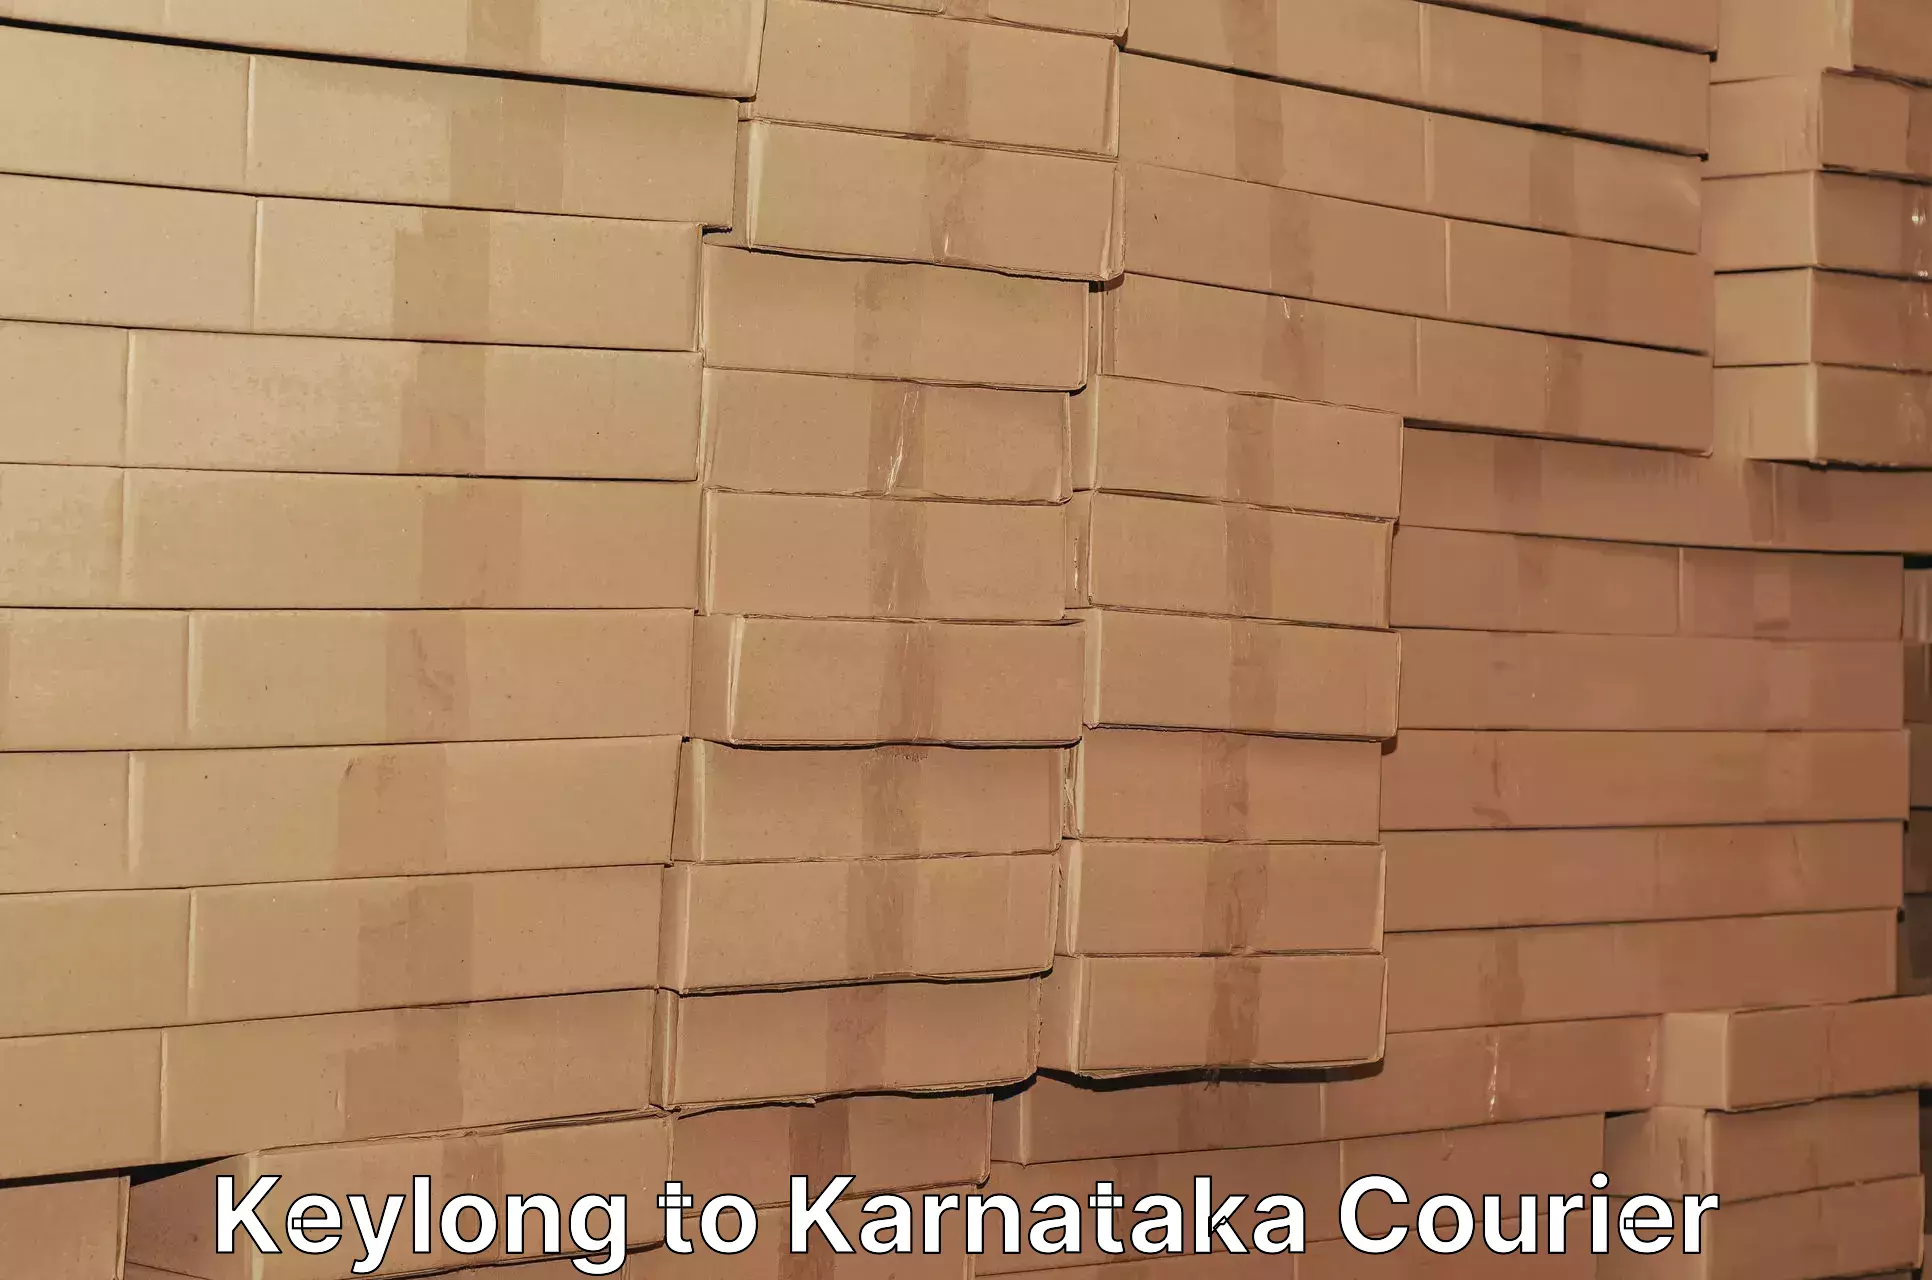 Holiday shipping services Keylong to Karnataka